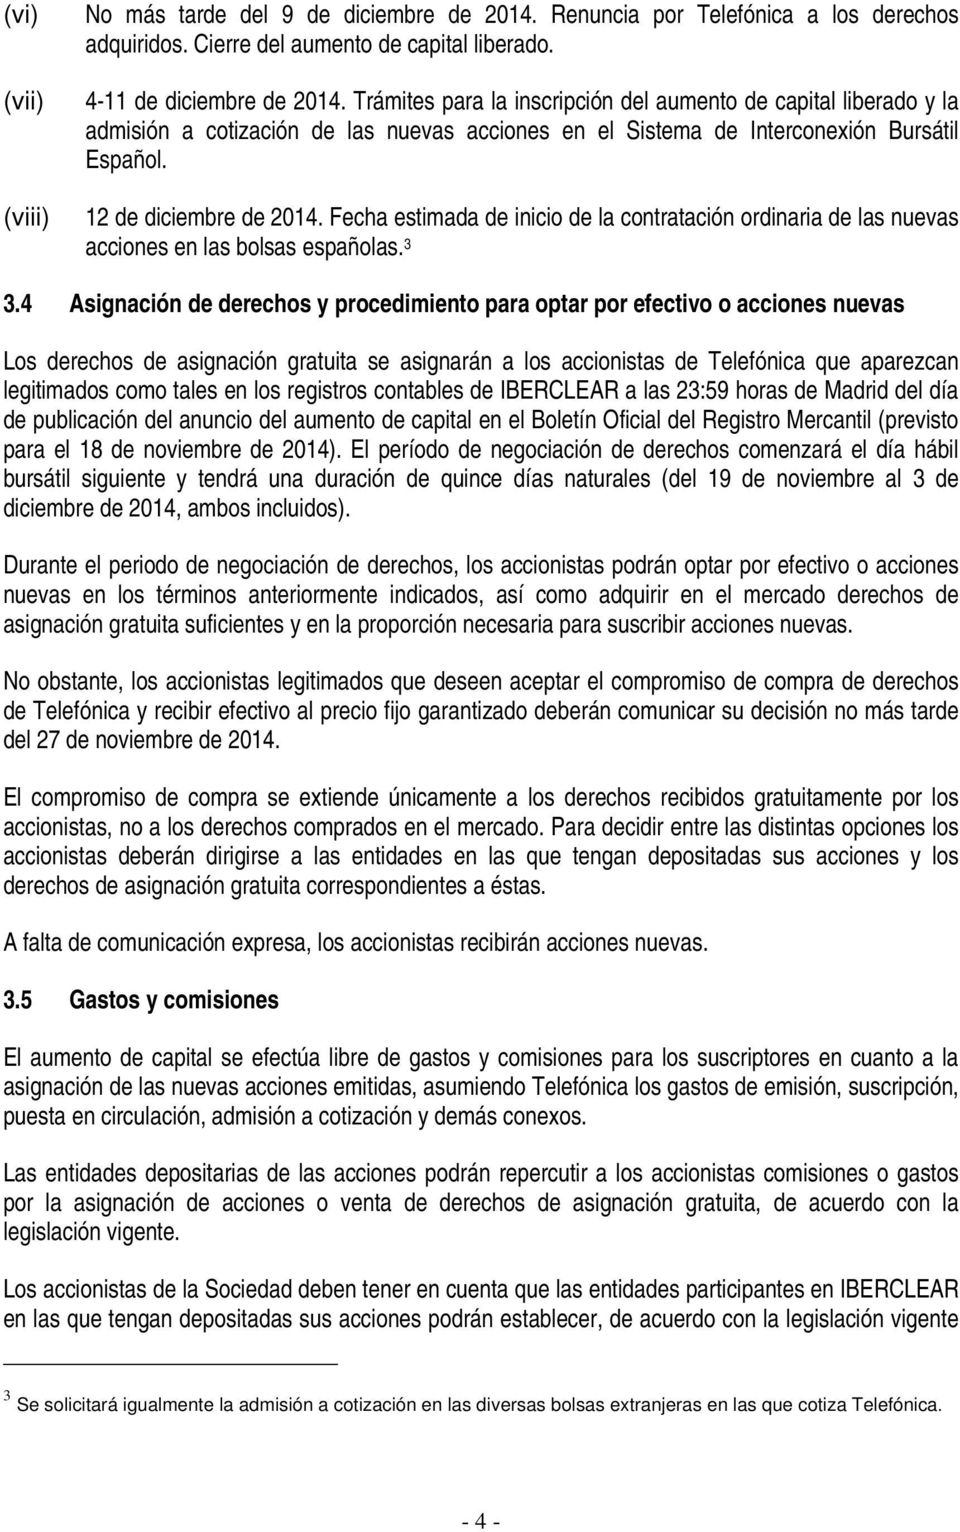 Fecha estimada de inicio de la contratación ordinaria de las nuevas acciones en las bolsas españolas. 3 3.